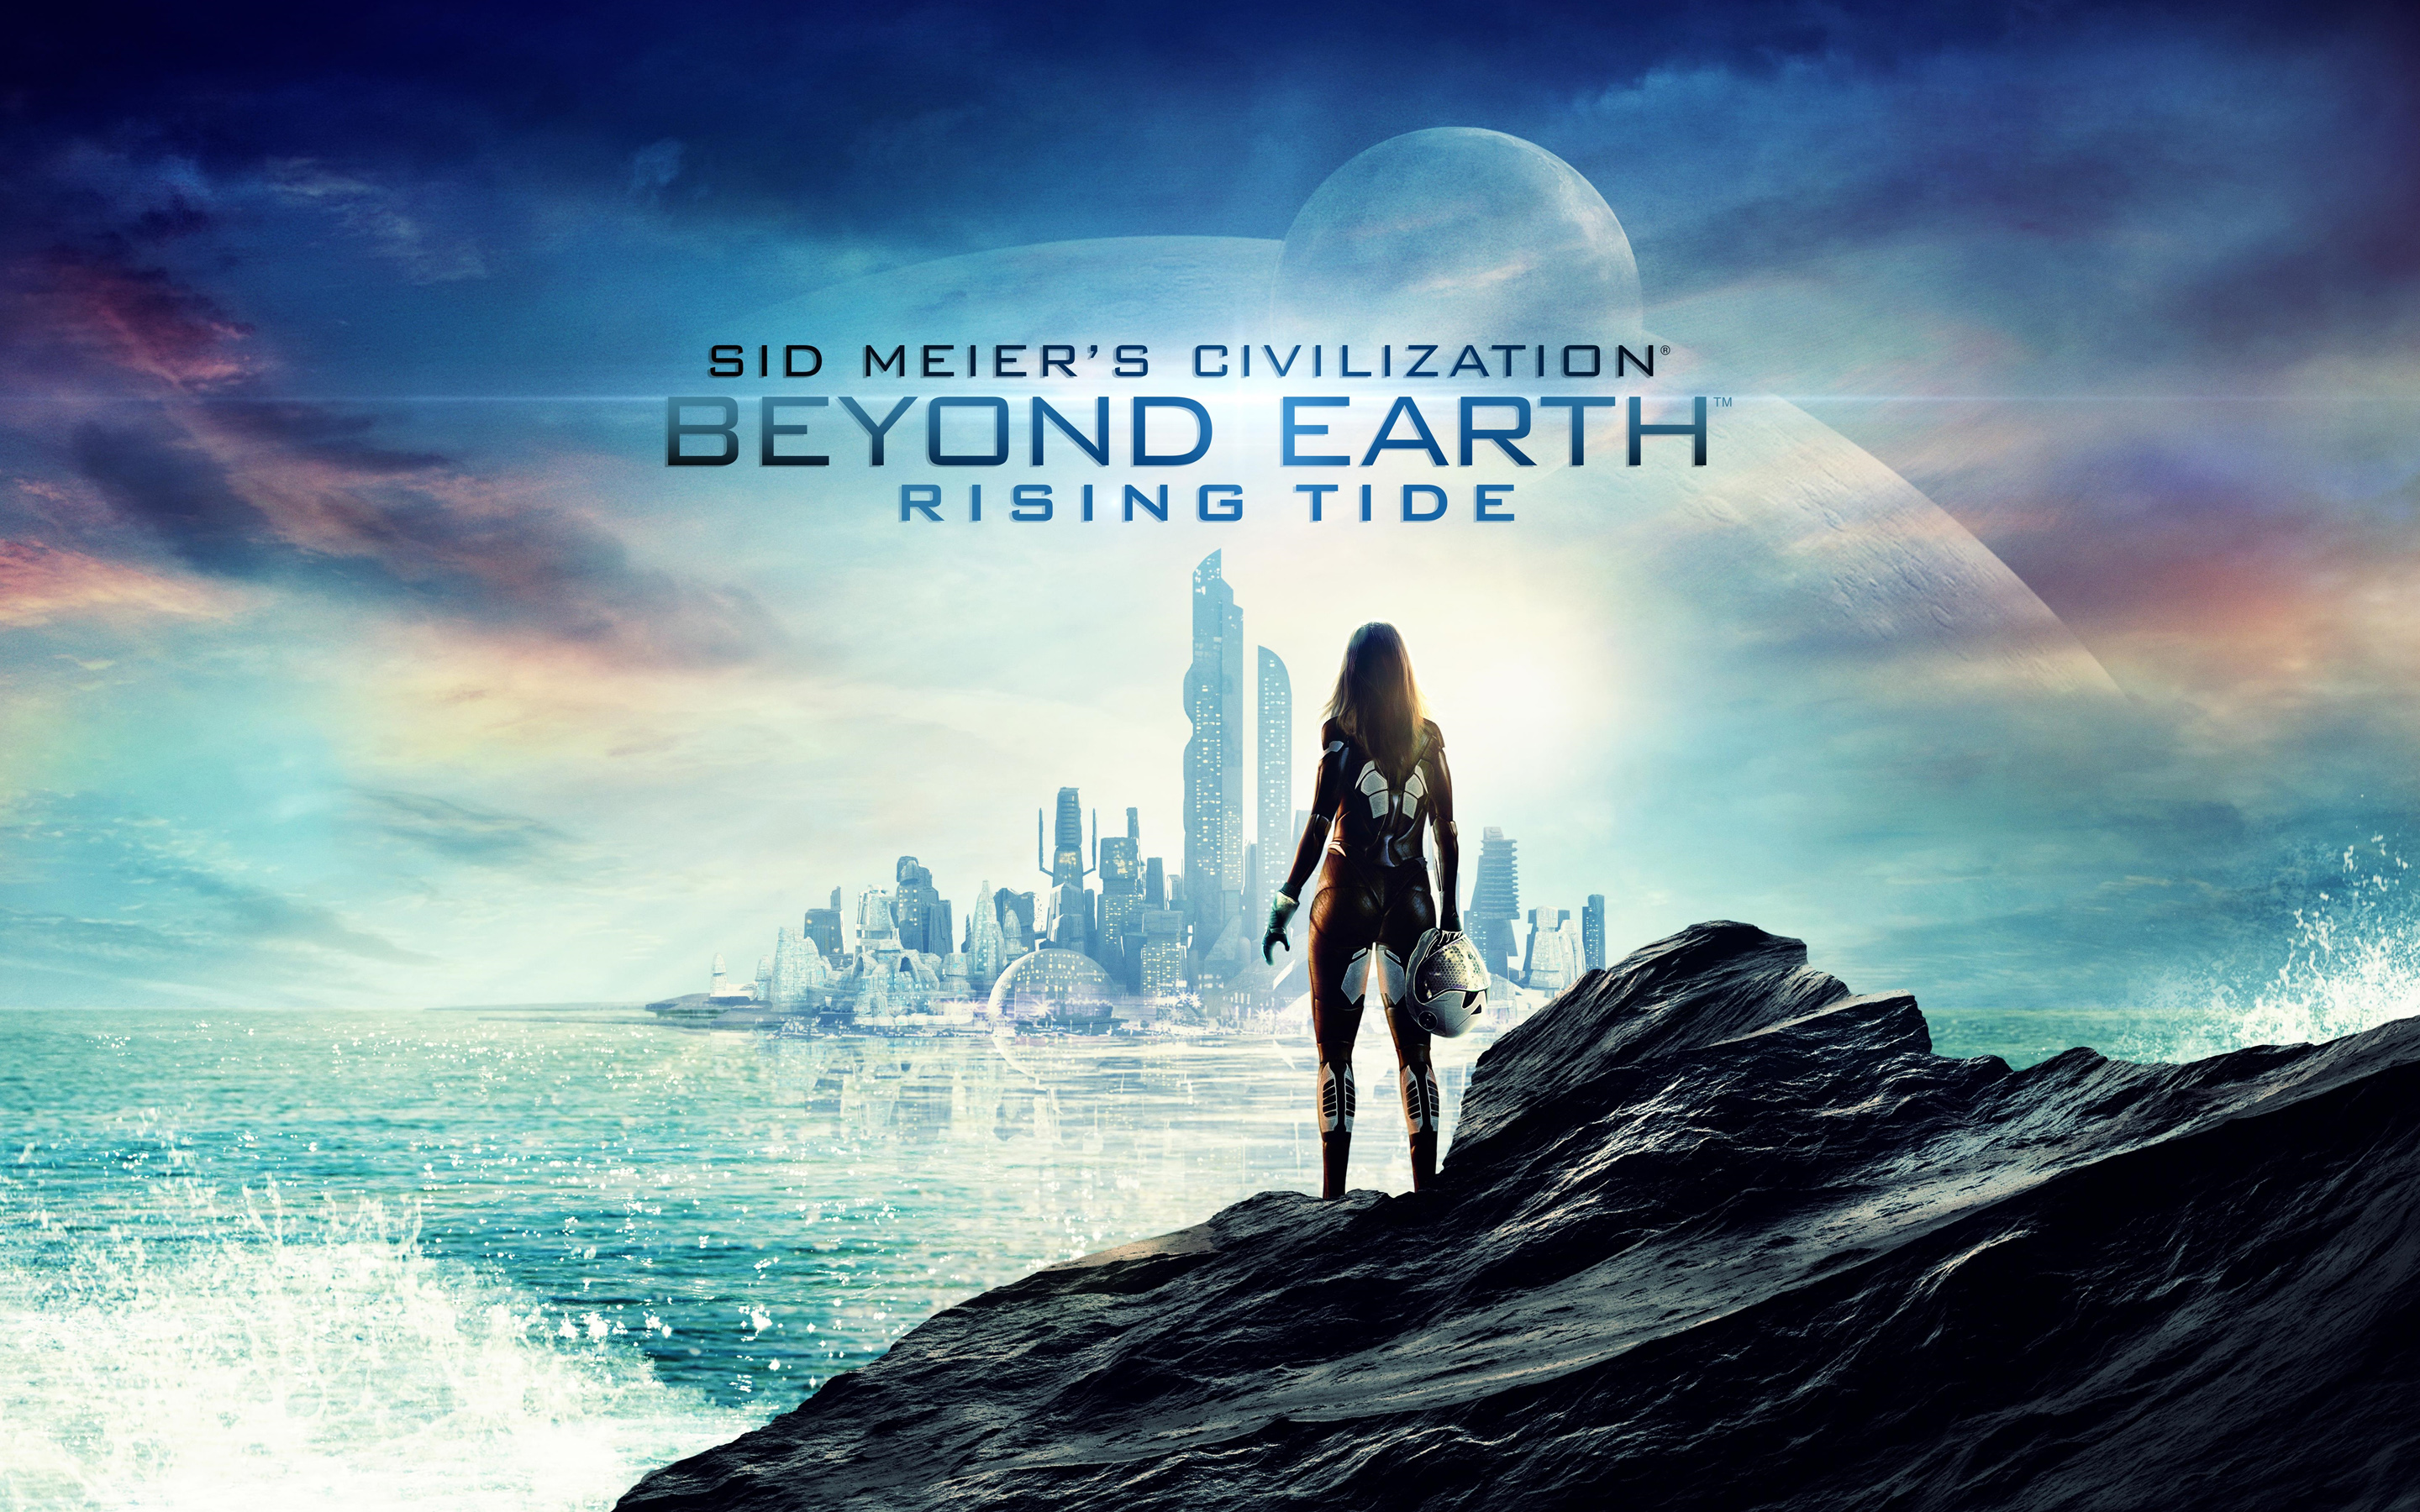 Sid Meier's Civilization Beyond Earth Rising Tide Wallpapers | HD ...